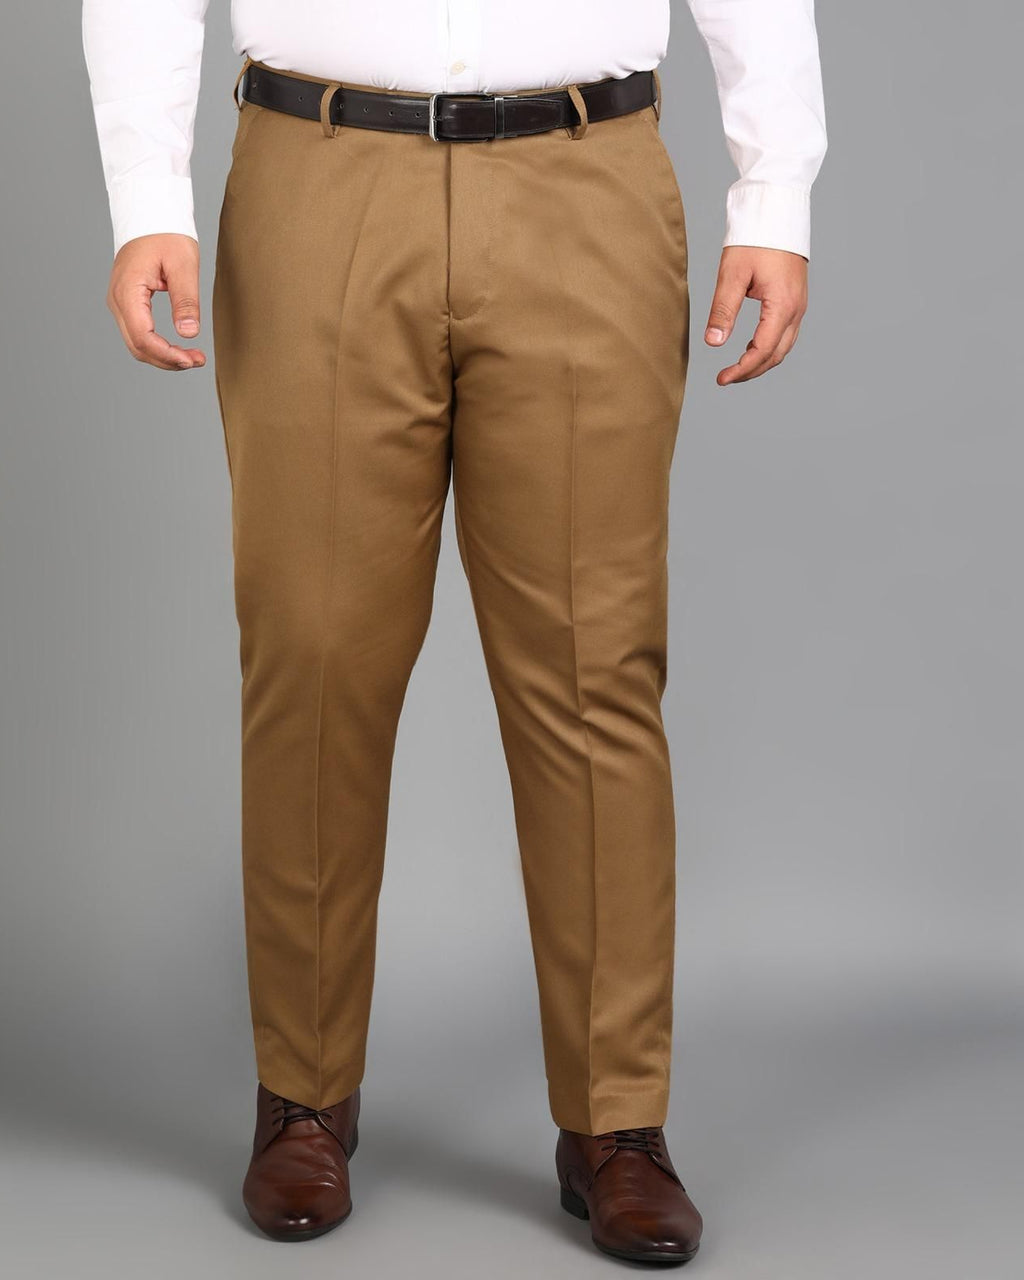 Dark stripe Men Formal Trousers 2023 New Fashion Belt Design Man Dress Pants  Simple Slim Business Casual Suit Pant Plus Size 38